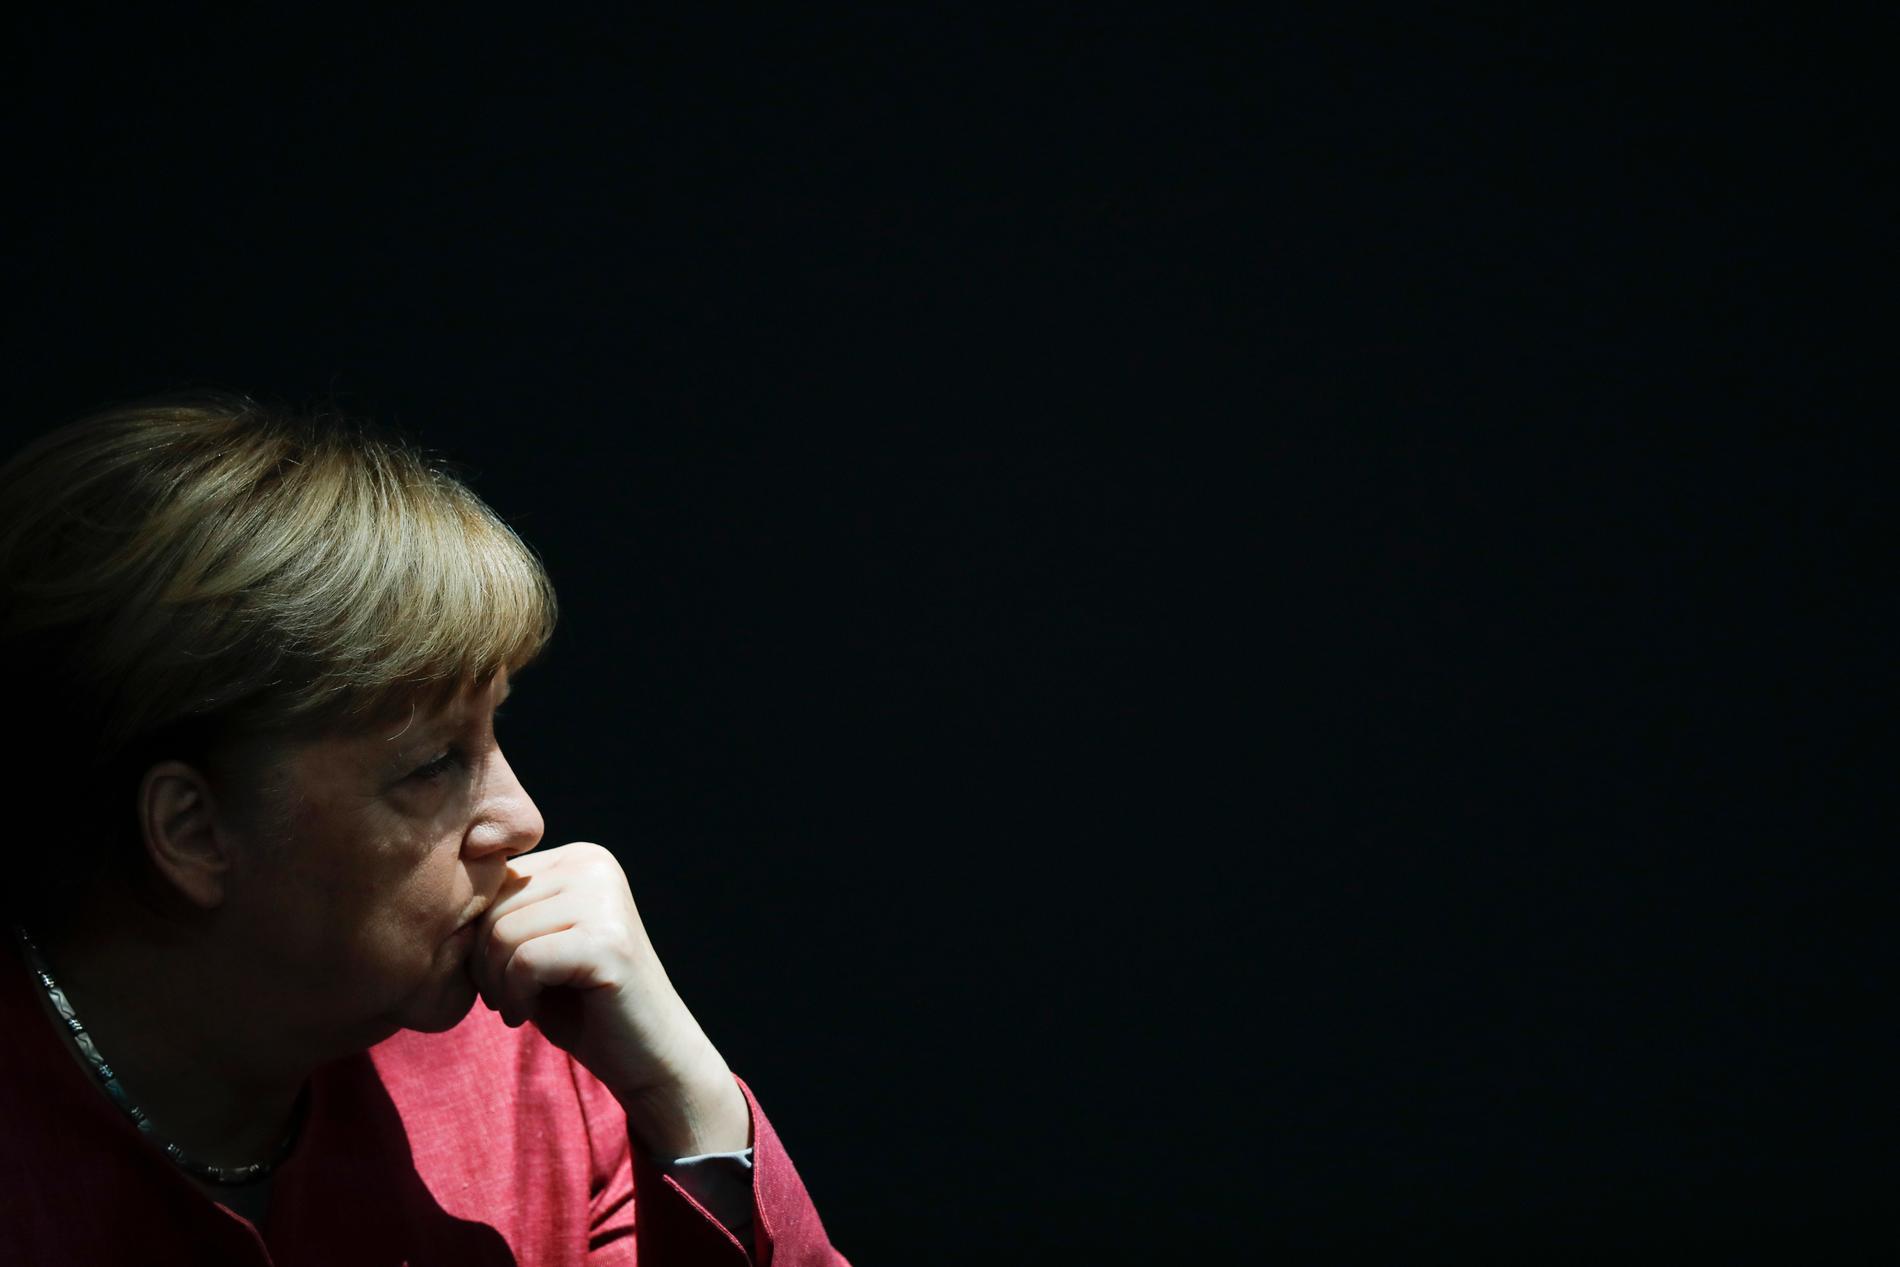 Tysklands förbundskansler Angela Merkel var en av de drabbade under en rysk cyberattack mot den tyska förbundsdagen 2015. Arkivfoto.